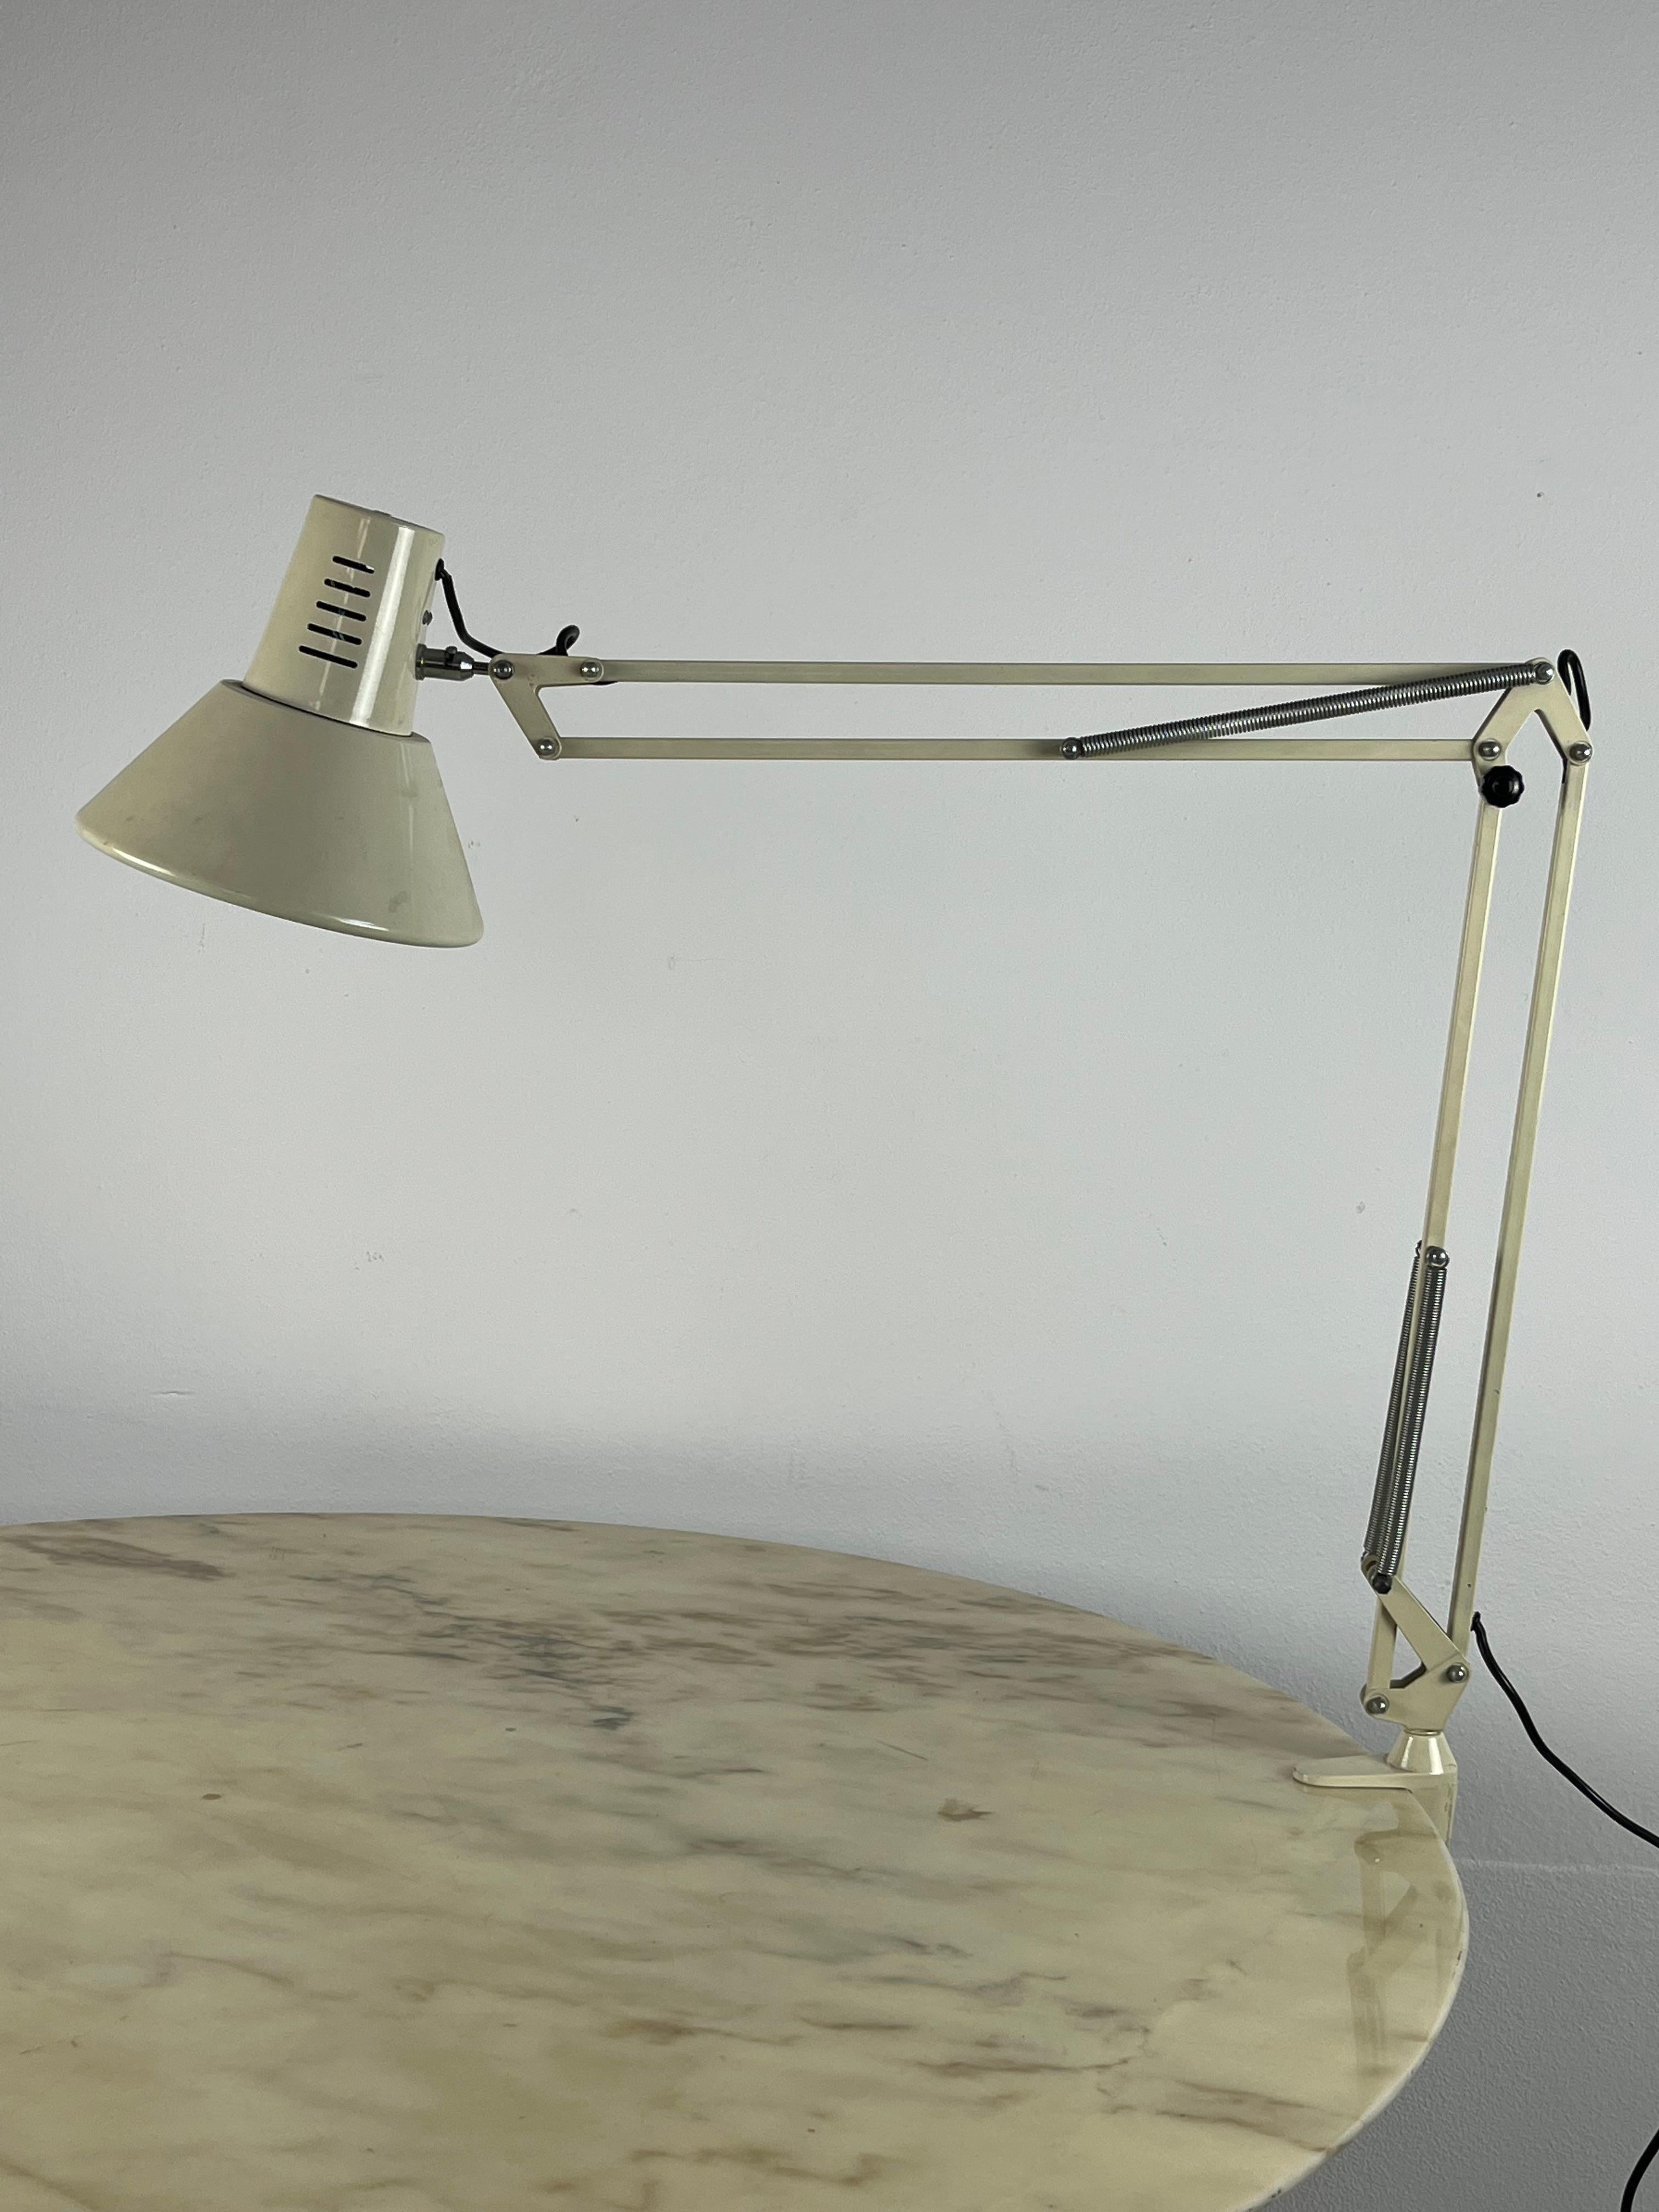 Lampe de table extensible avec pince, fabriquée en Italie, années 1970.
Petits signes d'usure mais toujours en excellent état.Le bras peut être dirigé dans n'importe quelle direction sur la table. Il arrive à 100 cm du CLAMP. Le plafonnier a un